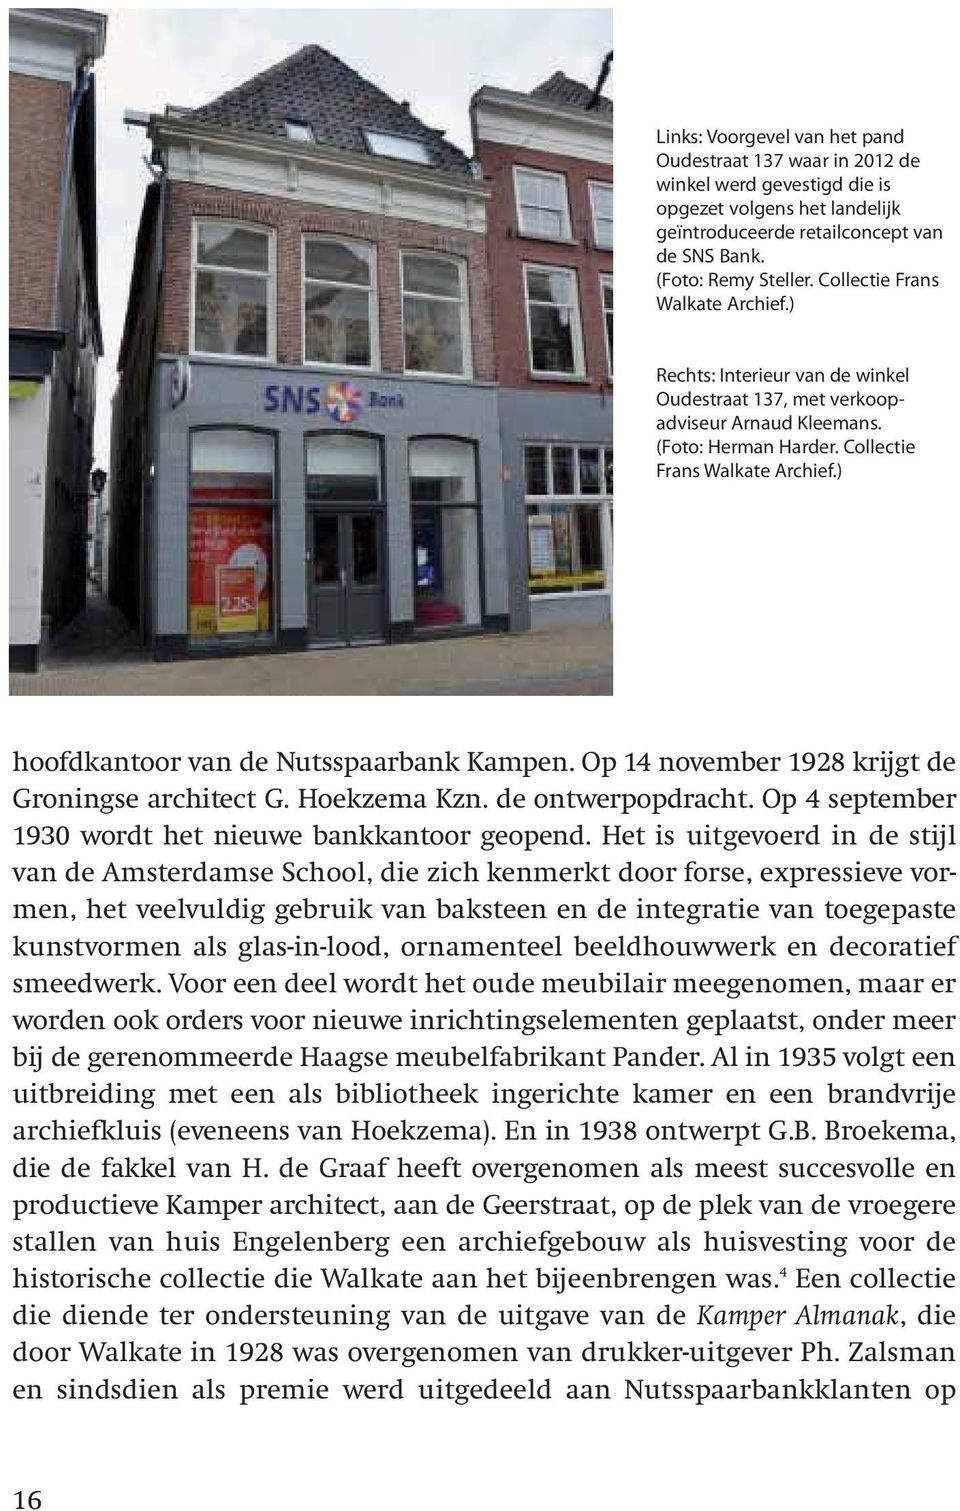 ) hoofdkantoor van de Nutsspaarbank Kampen. Op 14 november 1928 krijgt de Groningse architect G. Hoekzema Kzn. de ontwerpopdracht. Op 4 september 1930 wordt het nieuwe bankkantoor geopend.